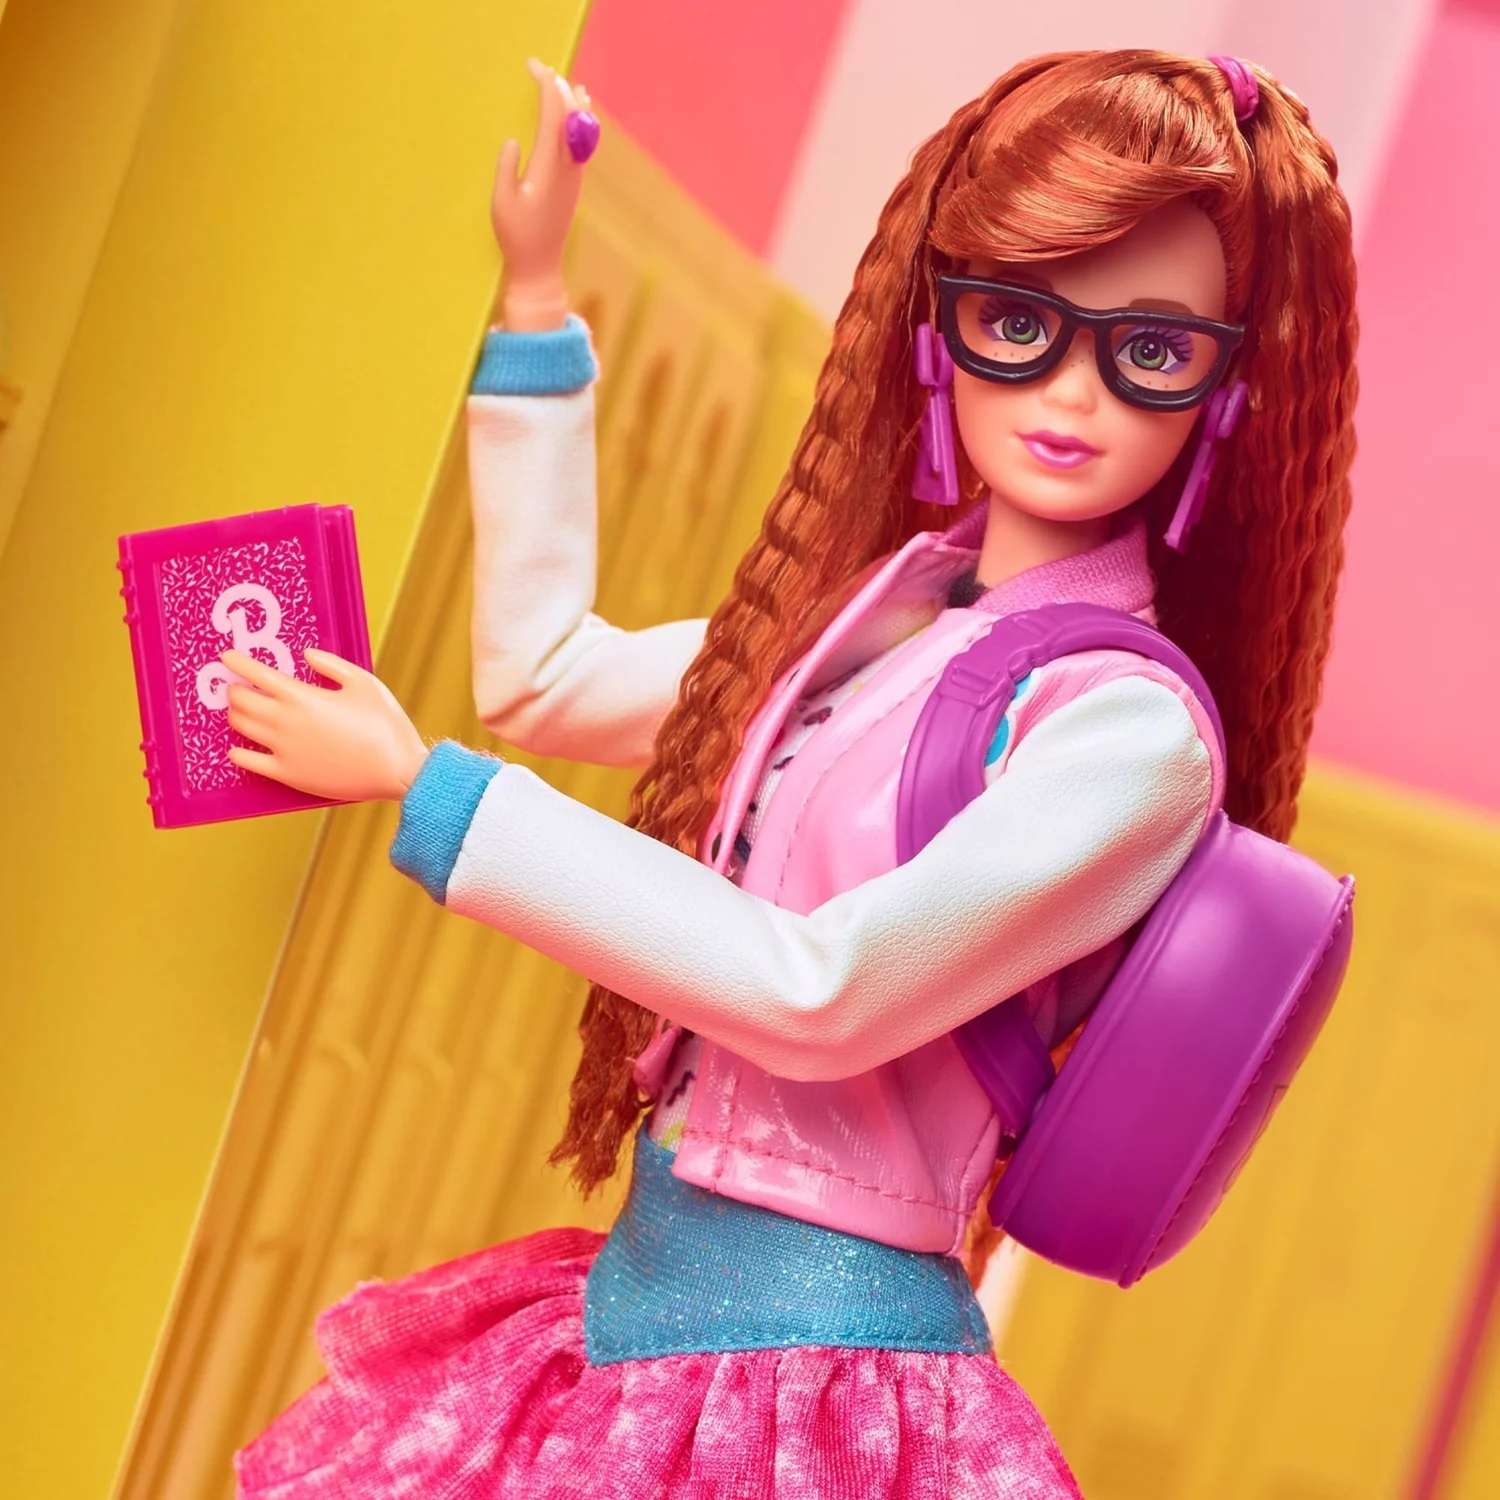 Кукла Barbie Rewind Школа в стиле 80-х годов HBY13 HBY13 - фото 15